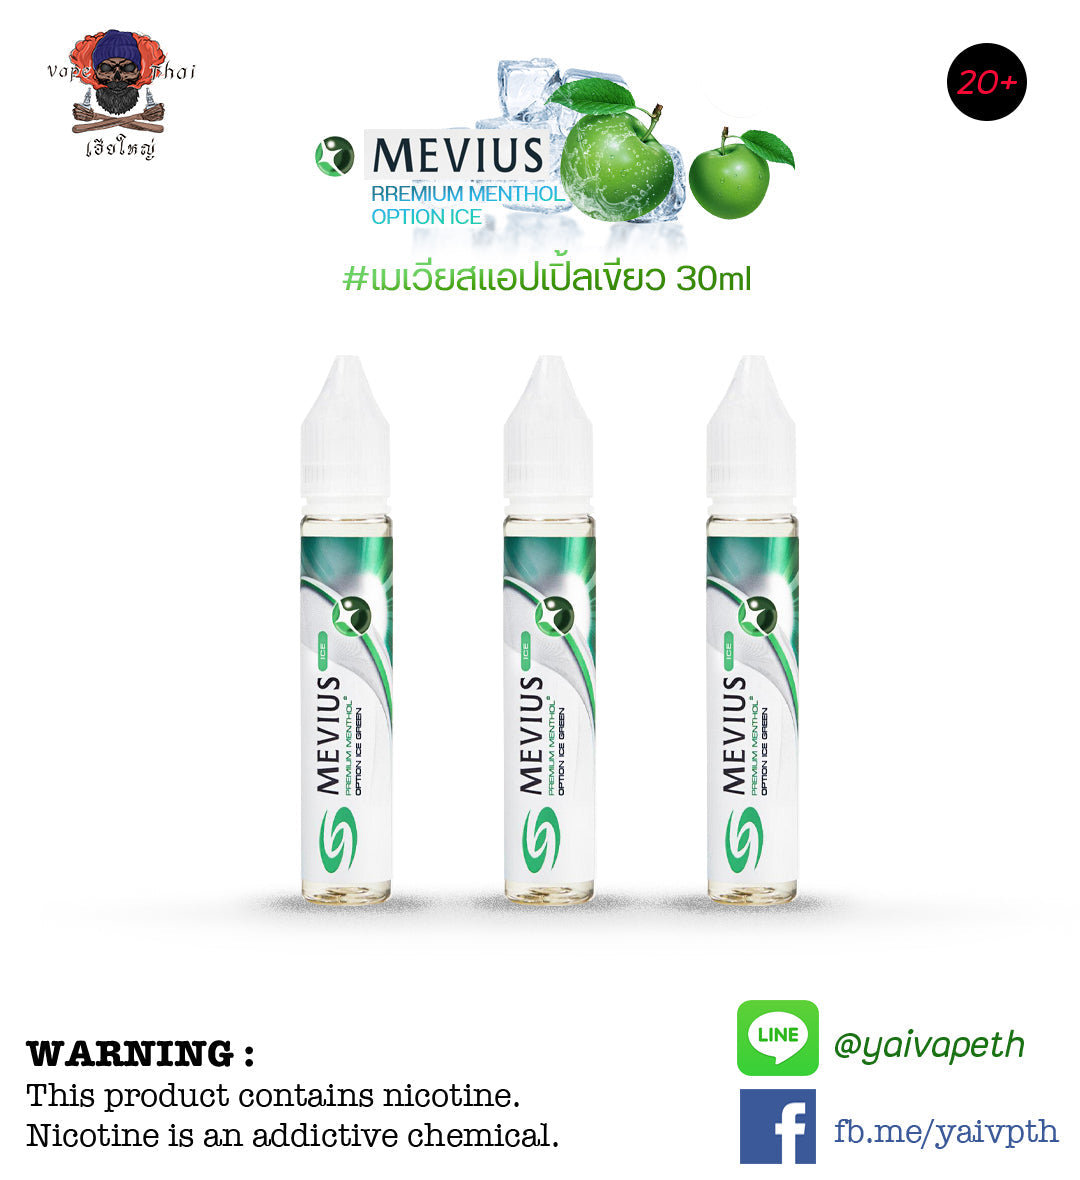 เมเวียสแอปเปิลเขียว - น้ำยาบุหรี่ไฟฟ้า MEVIUS ICE OPTION GREEN 30ml [เย็นมาก] ของแท้ - YAIVAPETHAI  No.1